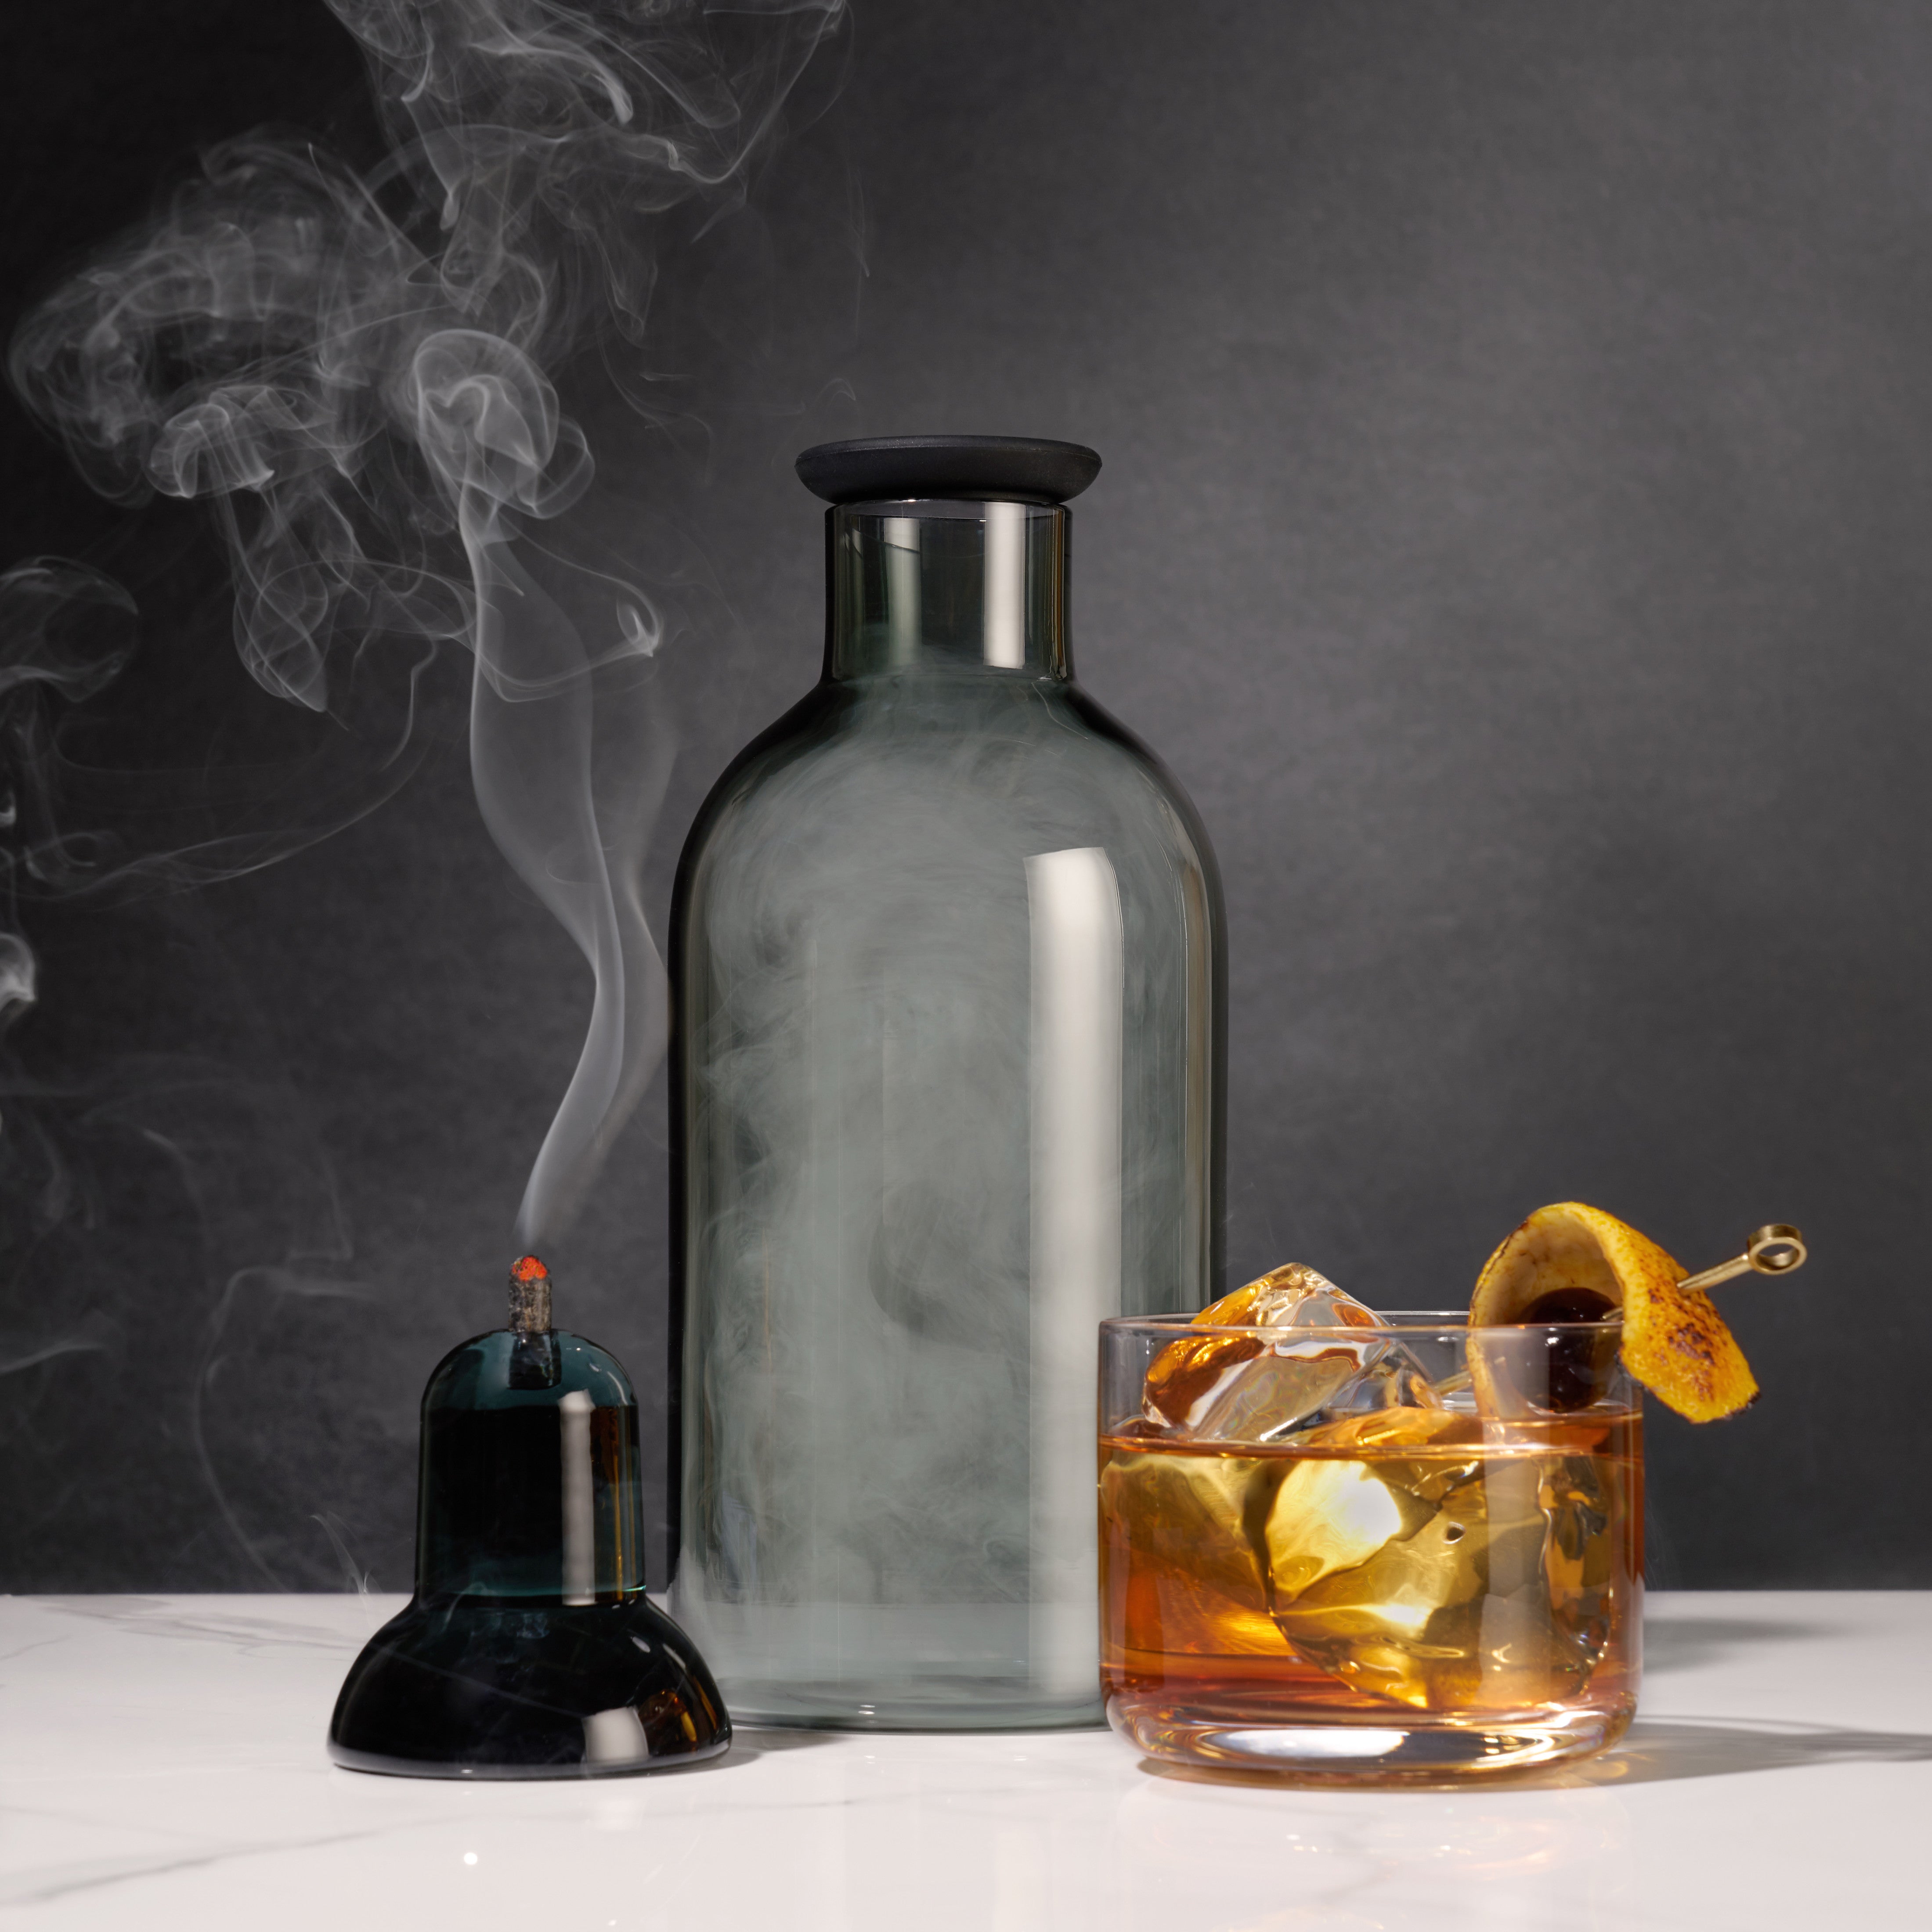 Smoky Cocktail Smoker Kit V4.0 (PREORDER)